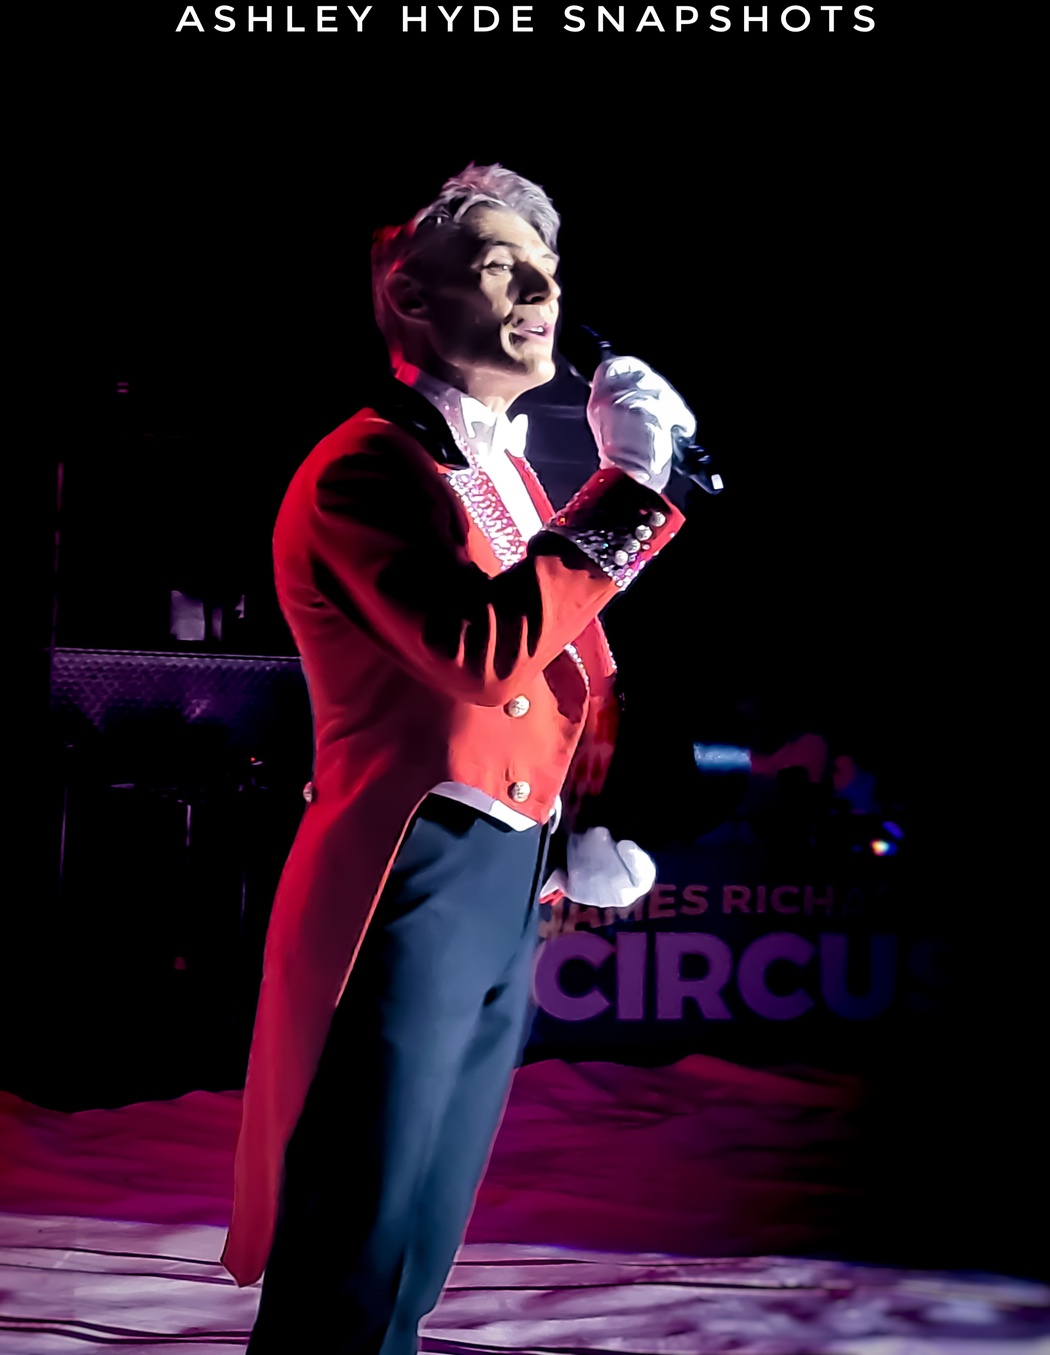 jrc circus man singing